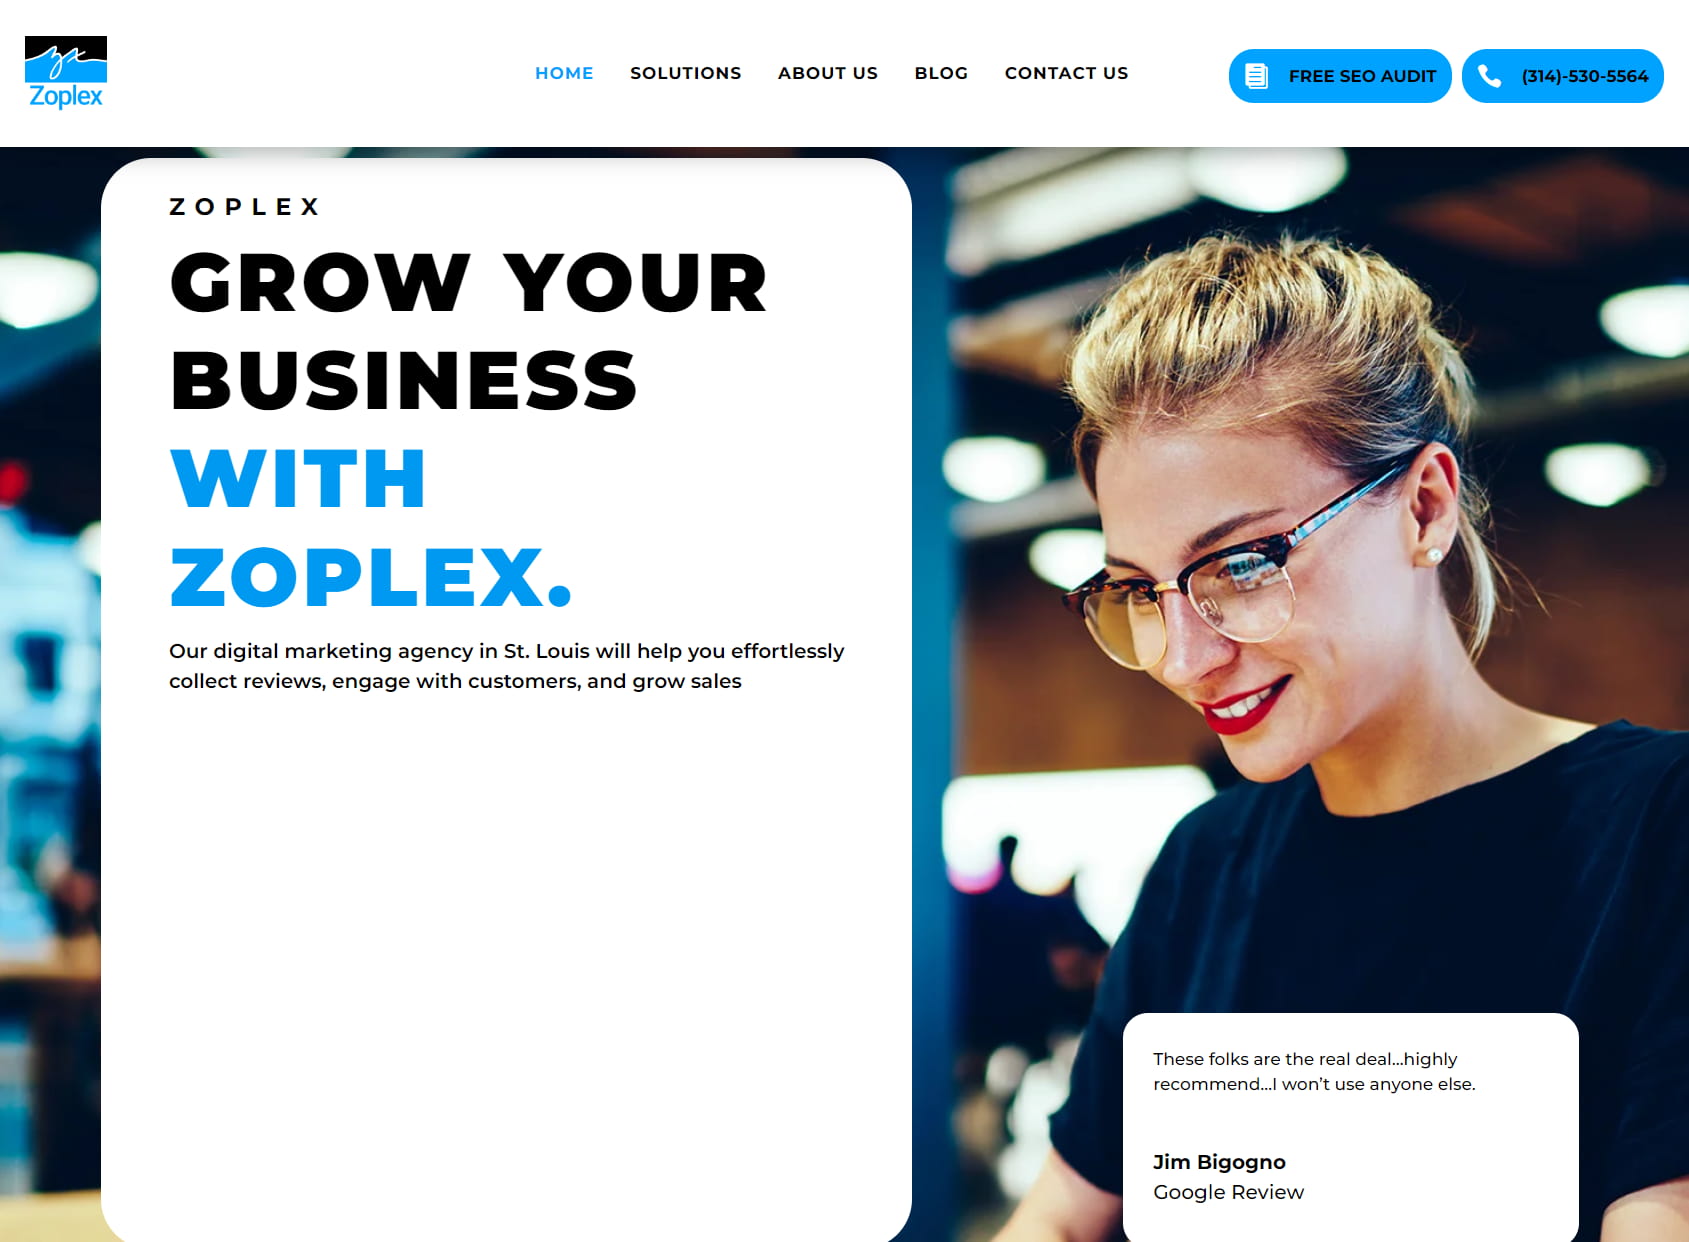 Zoplex - All Media, Marketing, & Advertising